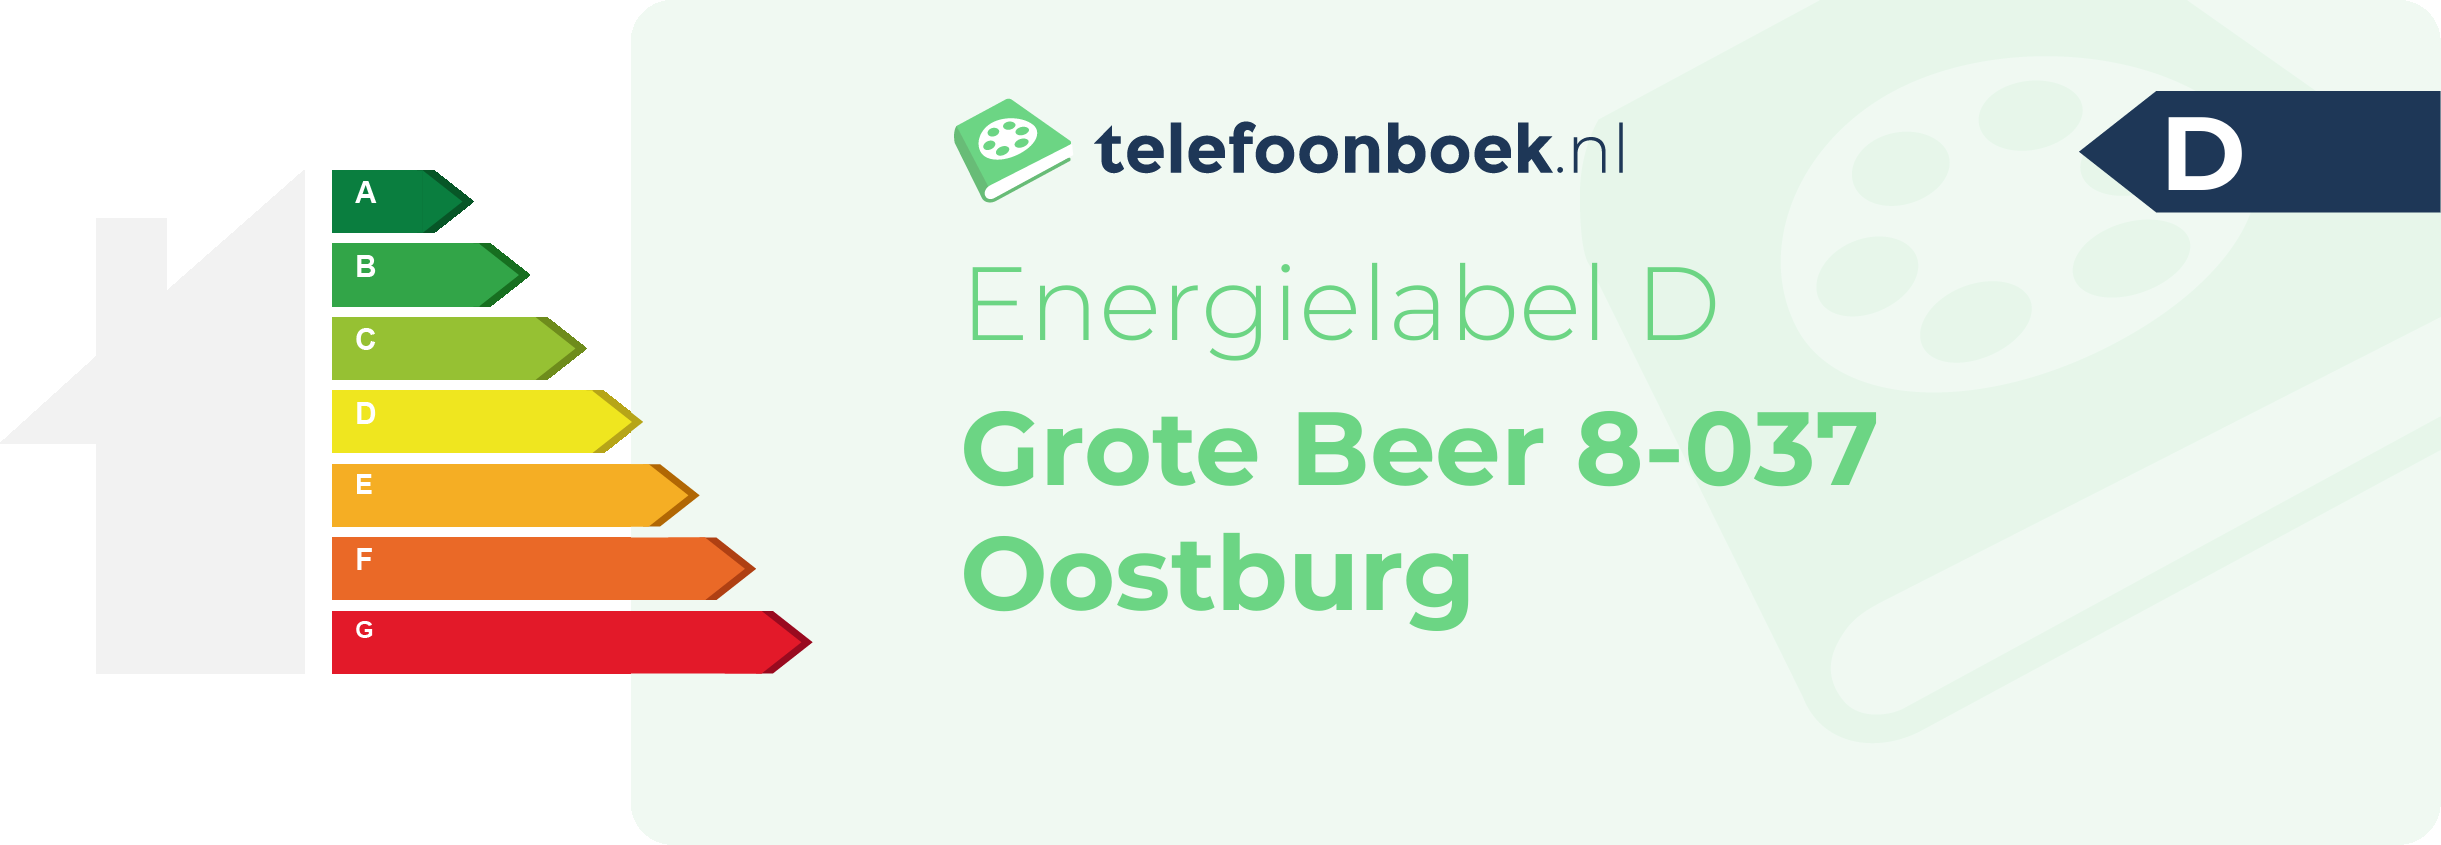 Energielabel Grote Beer 8-037 Oostburg